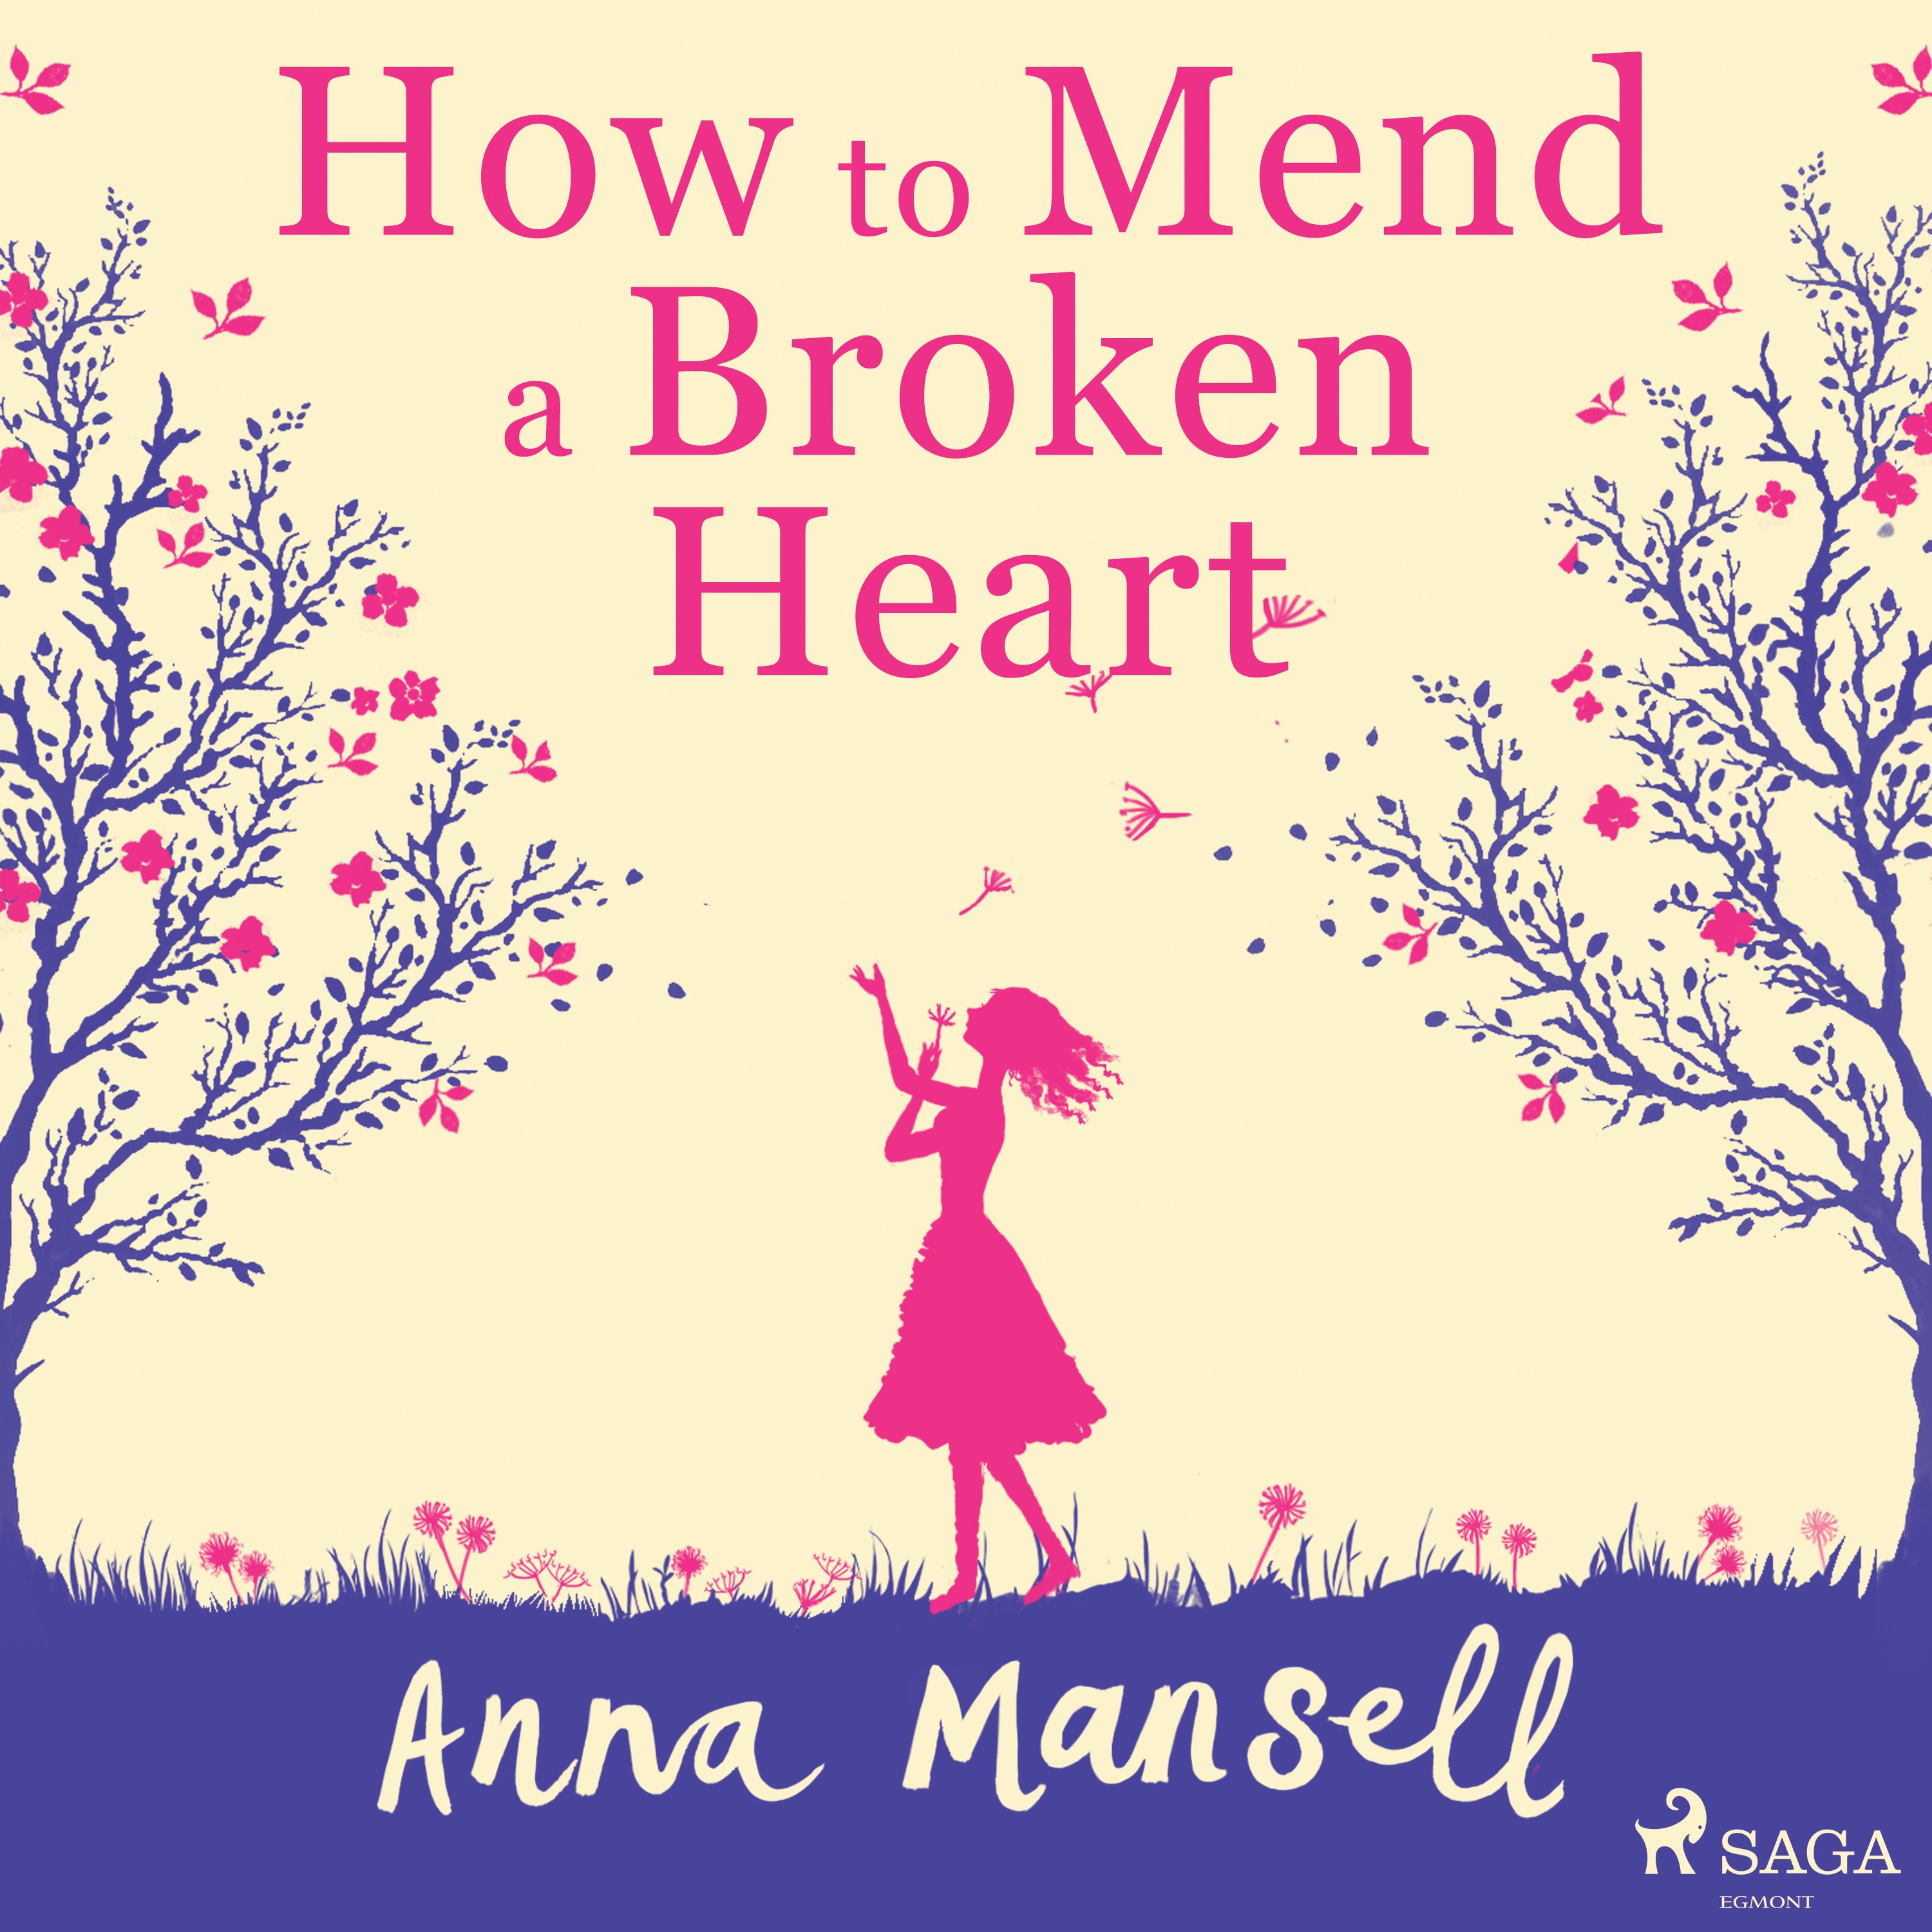 How To Mend a Broken Heart, ljudbok av Anna Mansell